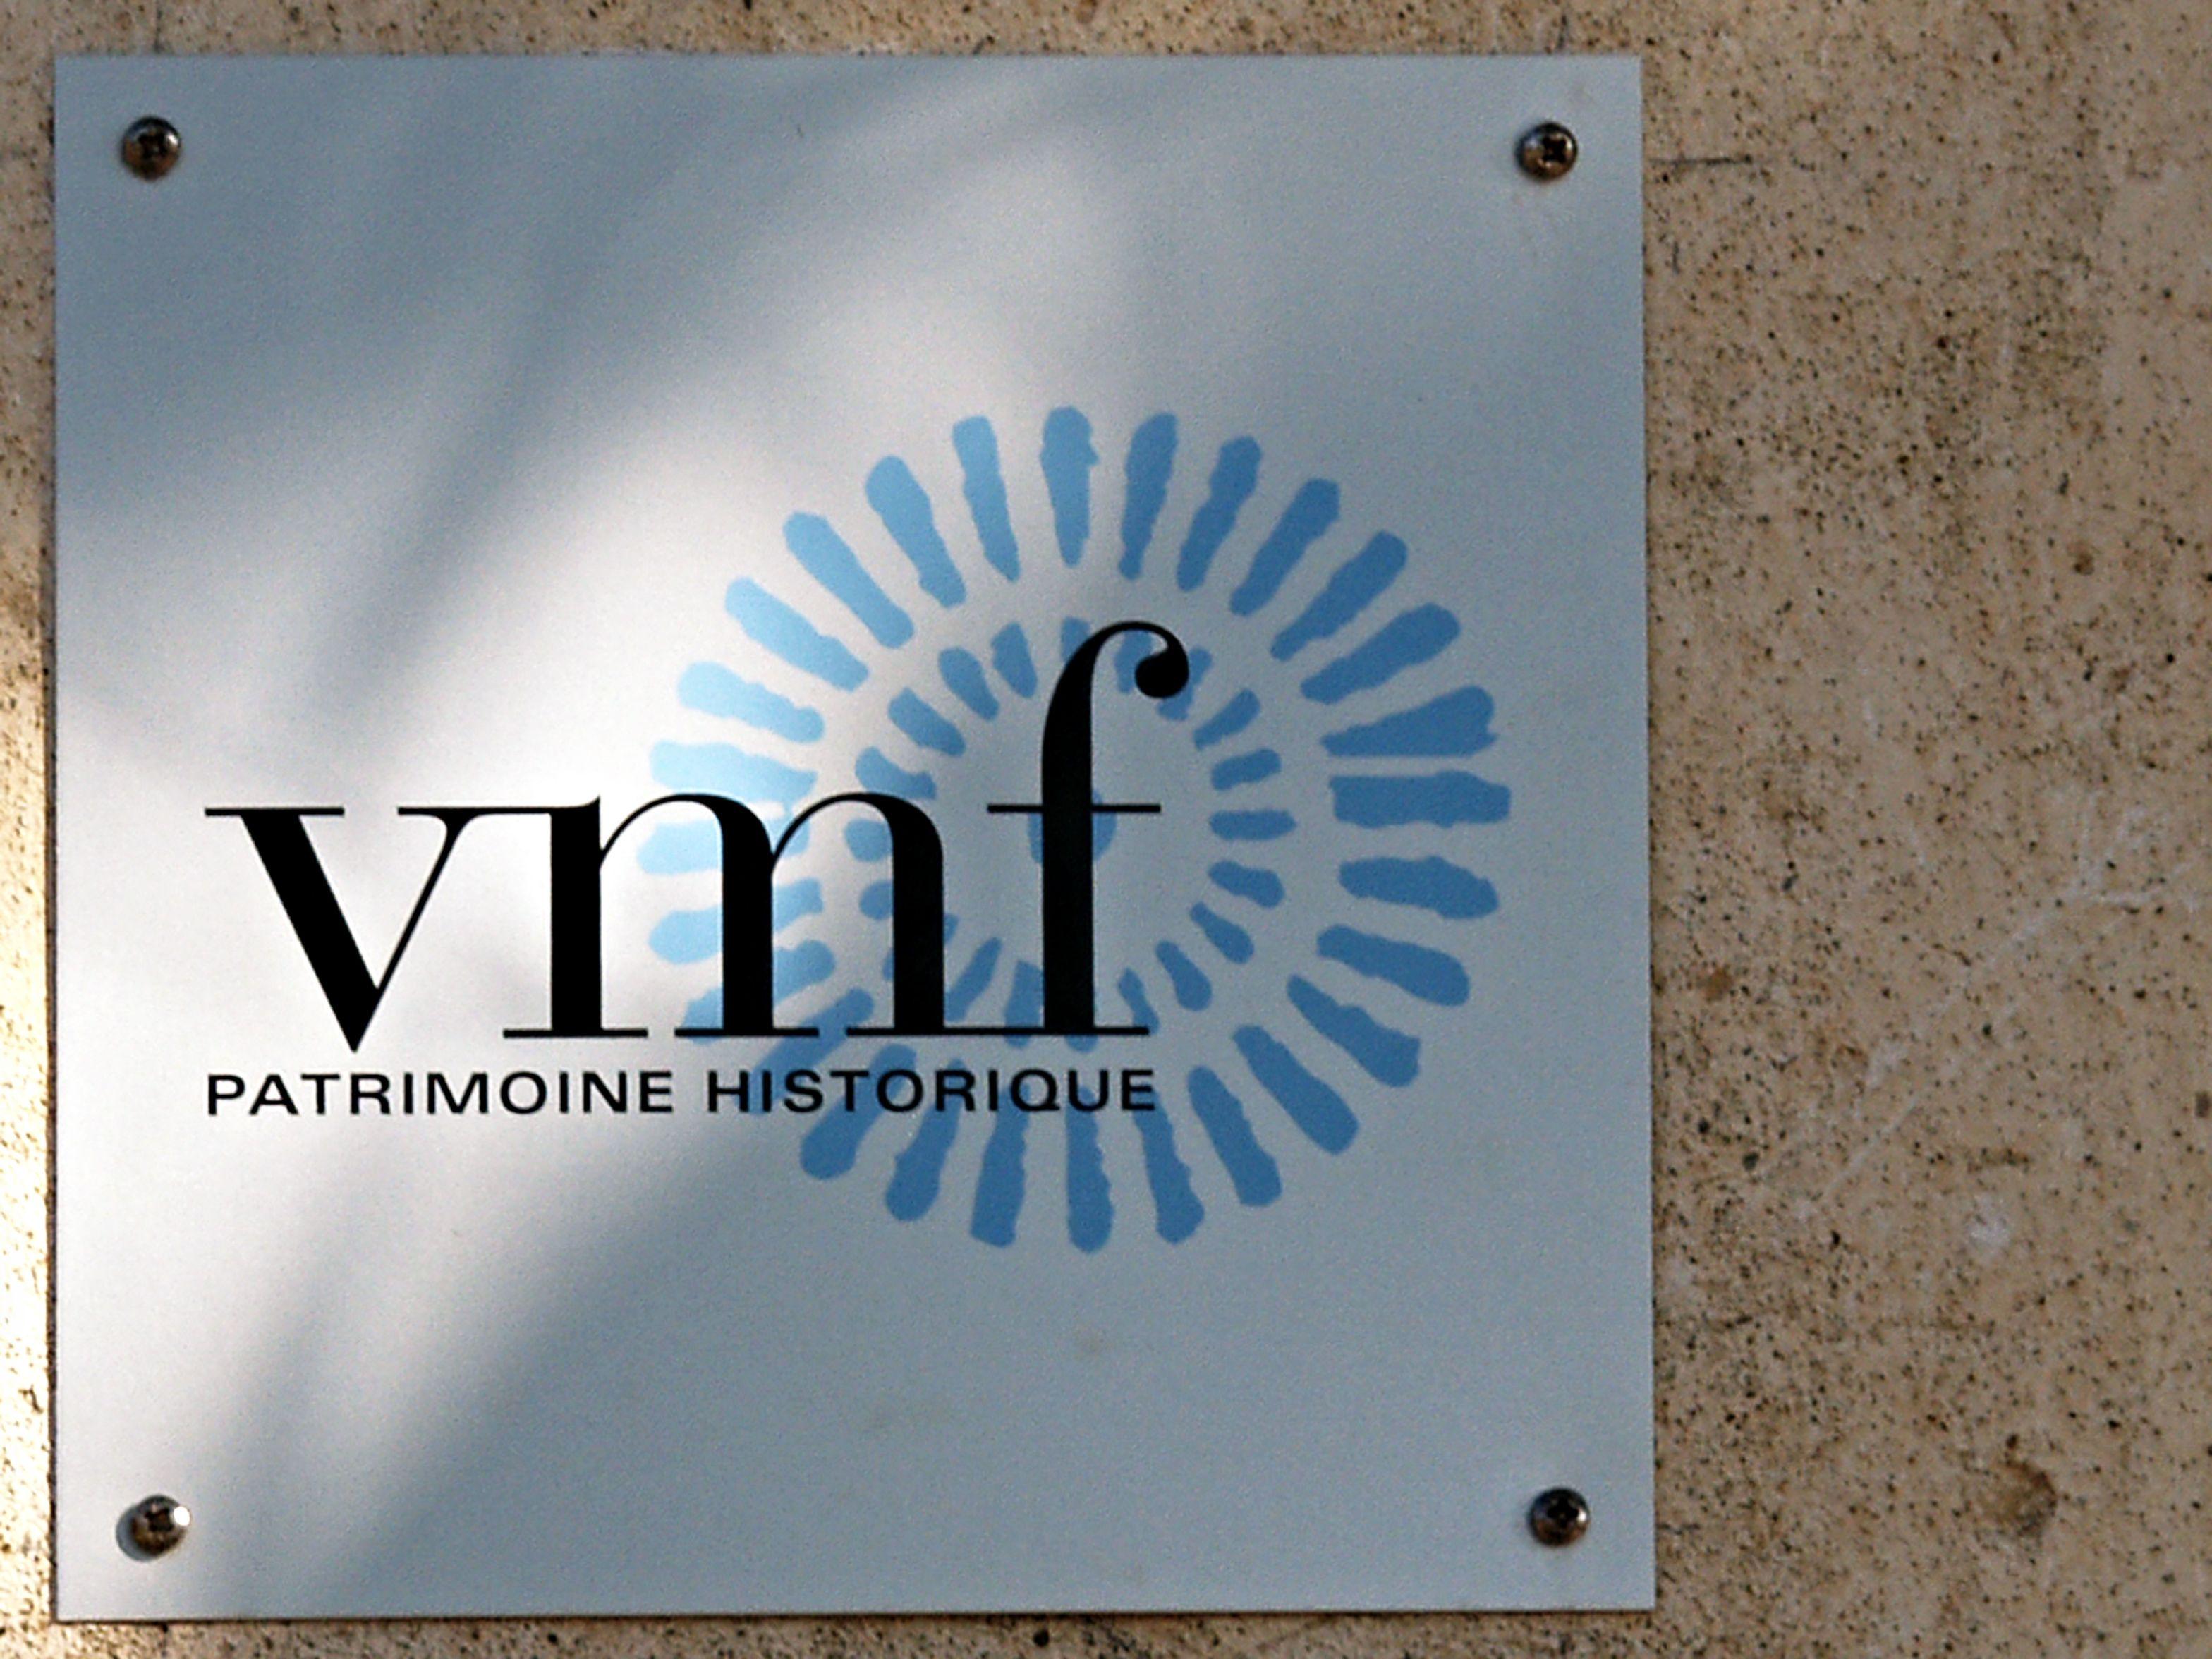 VMF Logo - File:Oletta-logo VMF.jpg - Wikimedia Commons